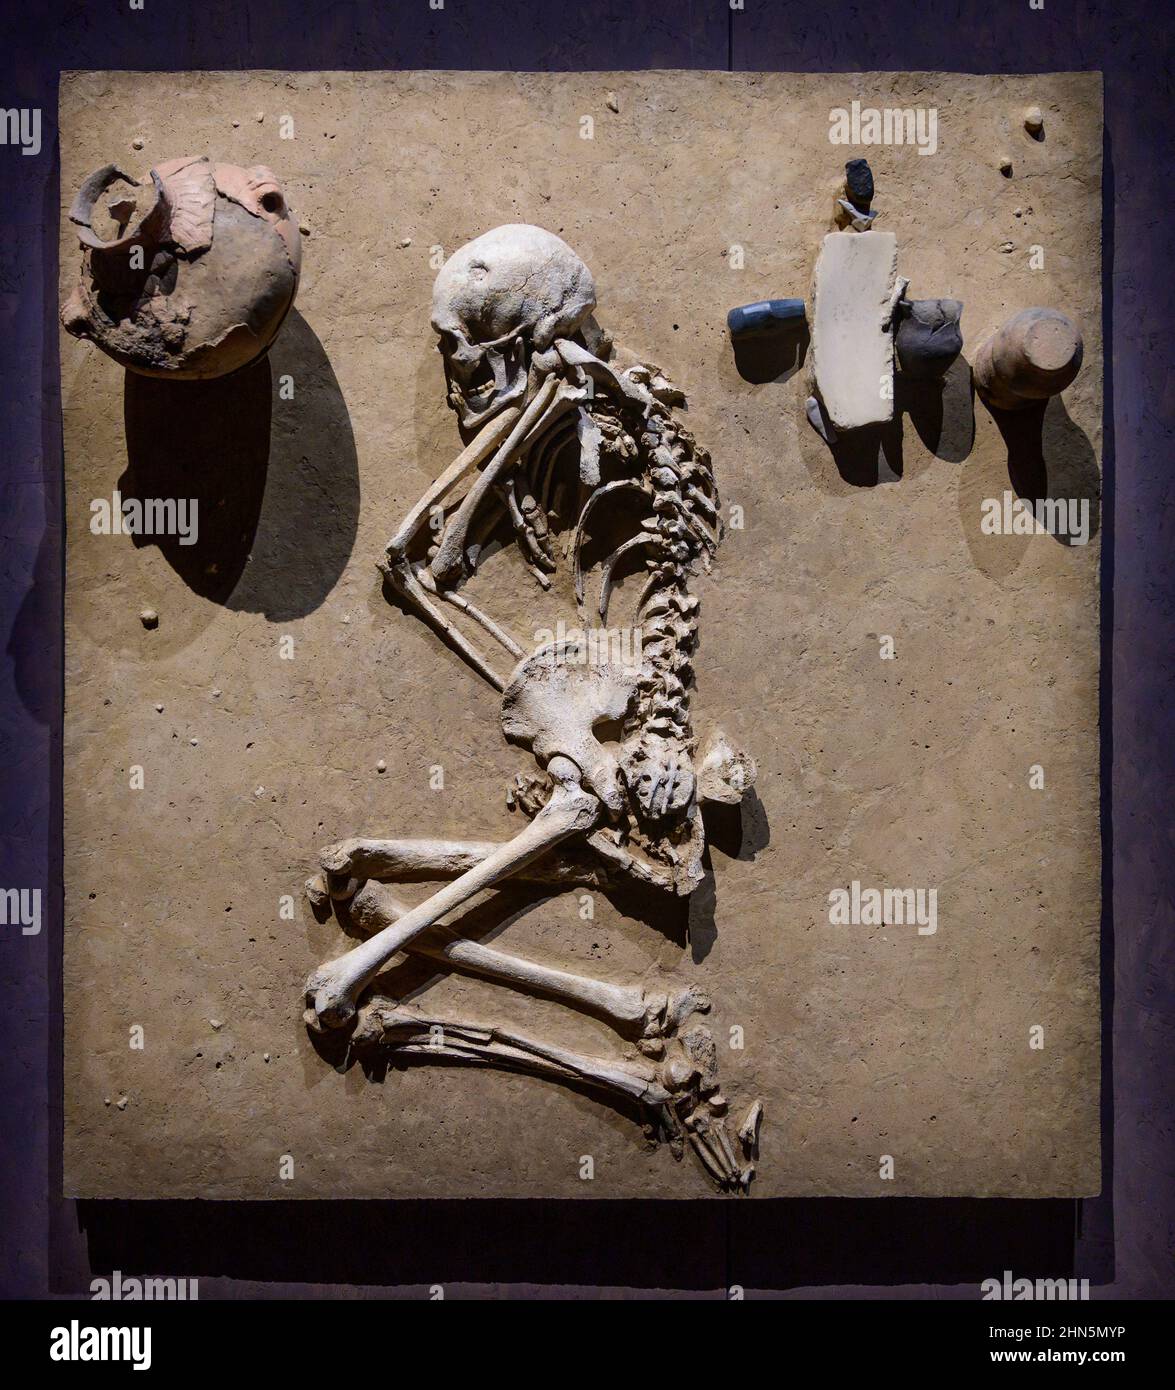 Il British Museum di Londra, Regno Unito. 14 febbraio 2022. The World of Stonehenge, la prima grande mostra britannica su Stonehenge e la più grande mostra del British Museum degli ultimi tempi, dal 17 febbraio al 17 luglio 2022. Immagine: Resti umani, Wennungen, Germania 2575-2450 a.C. Credit: Malcolm Park/Alamy Foto Stock